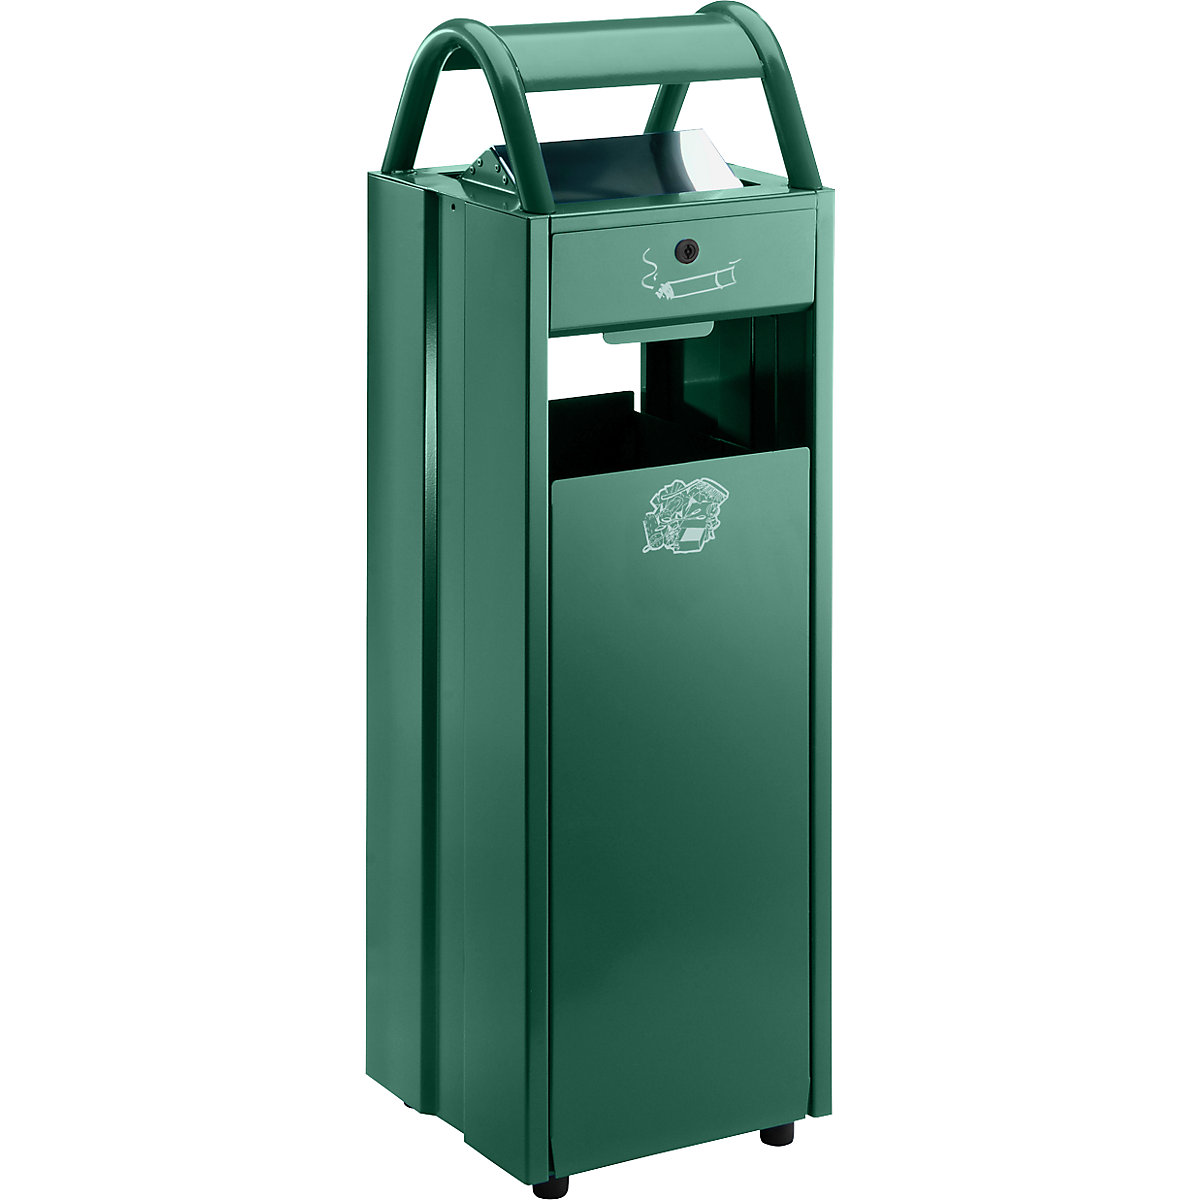 Coletor de lixo com cinzeiro e telhado de proteção – VAR, volume 35 l, LxAxP 300 x 960 x 250 mm, verde musgo RAL 6005-4